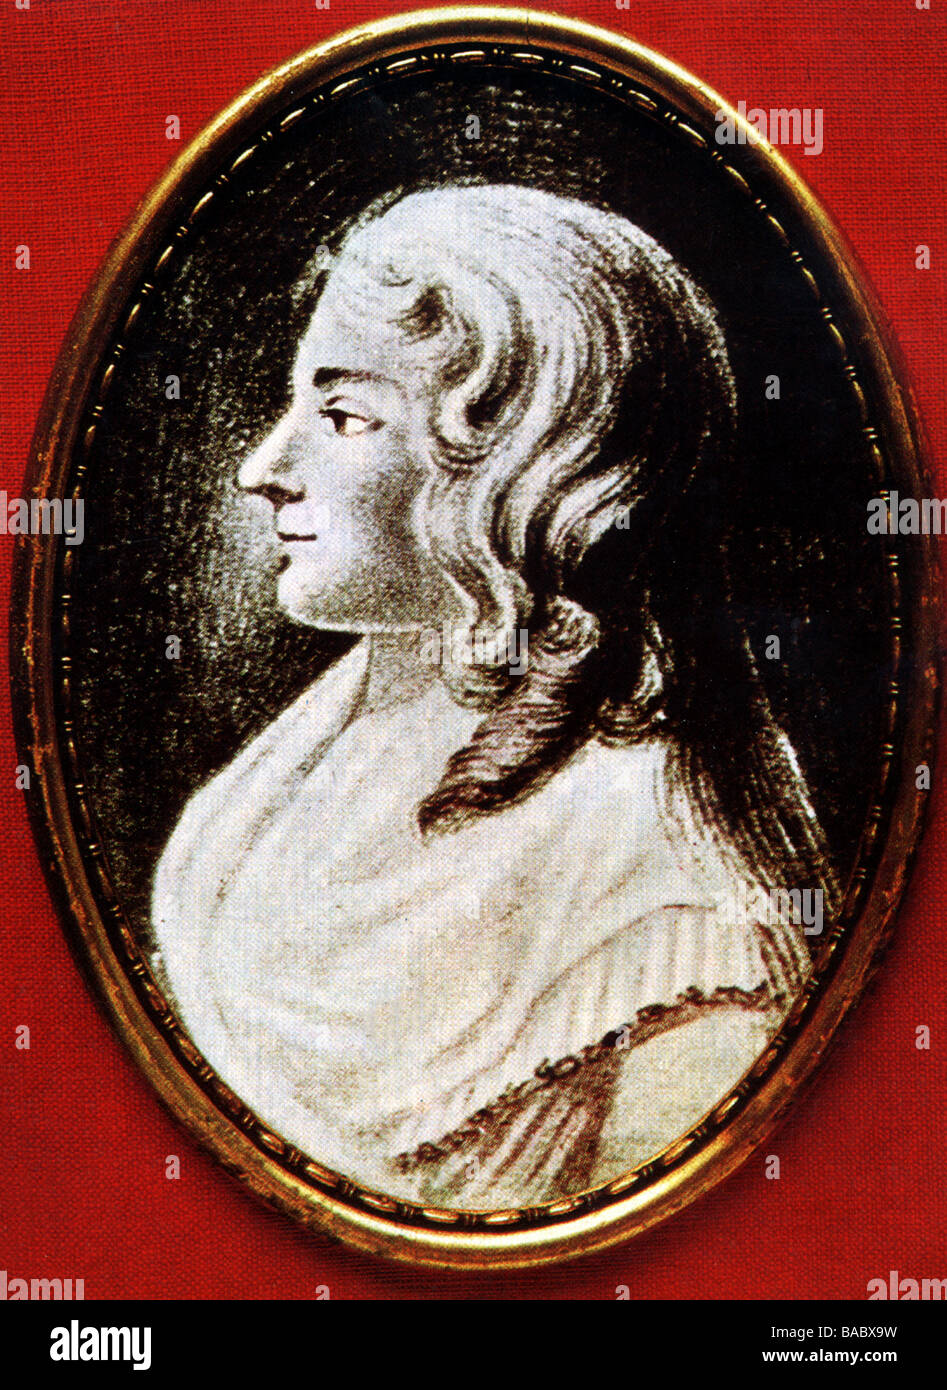 Erxleben, Dorothea Christiane, 13.11.1715 - 13.6.1762, médecin de femme allemande, portrait, dessin au charbon de bois aquarelle, Banque D'Images